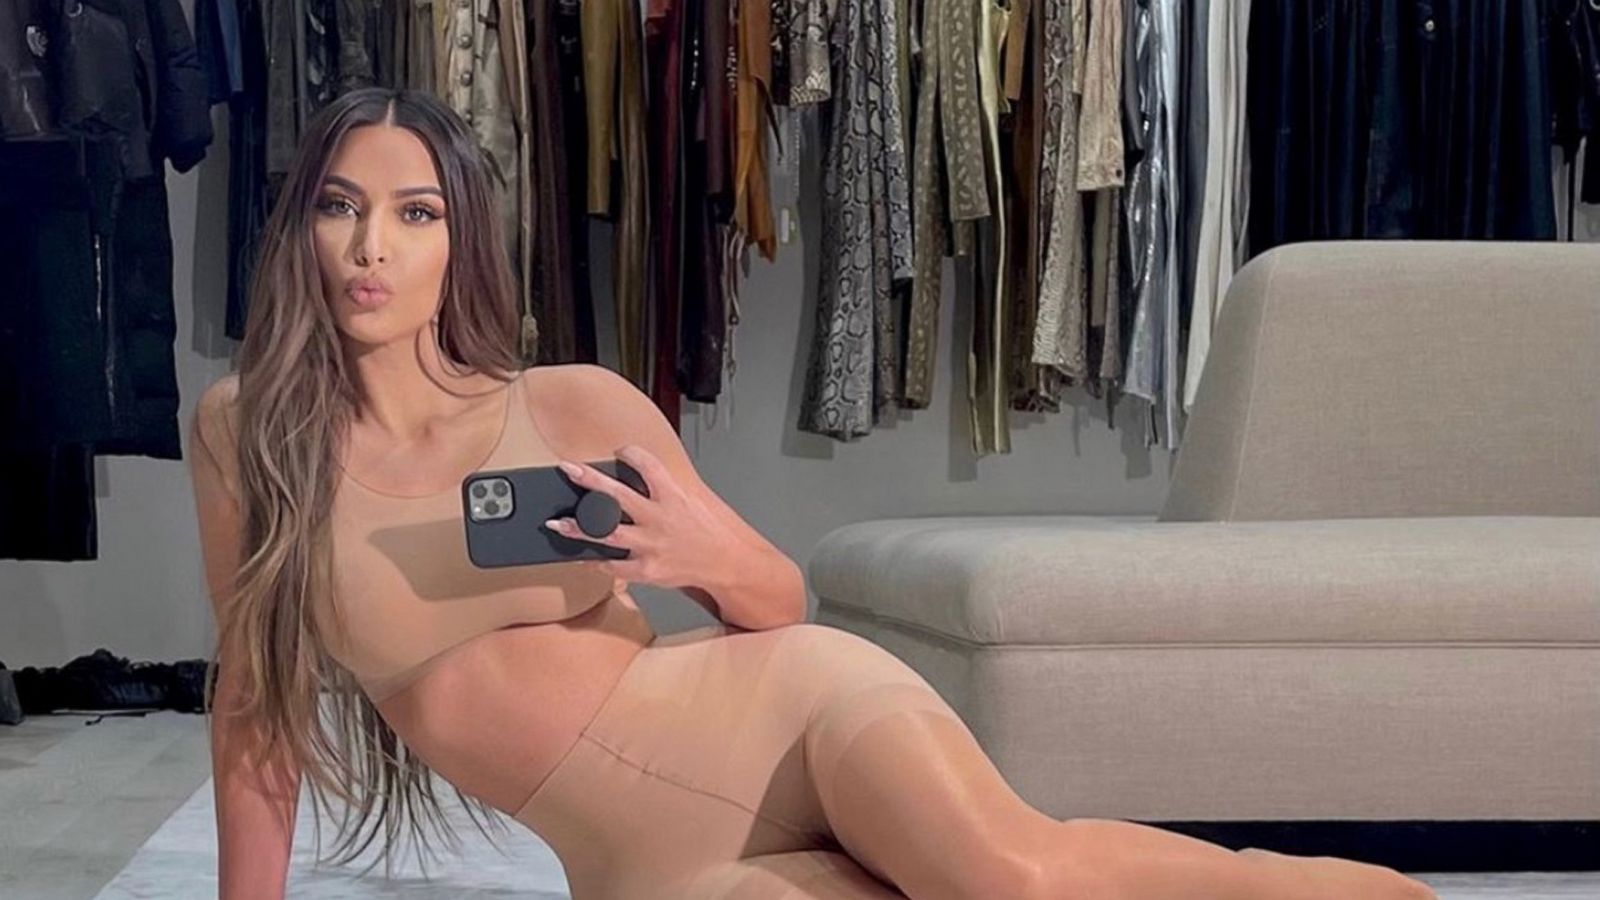 1600px x 900px - Kim Kardashian returns to Instagram to announce Skims hosiery launch - ABC  News